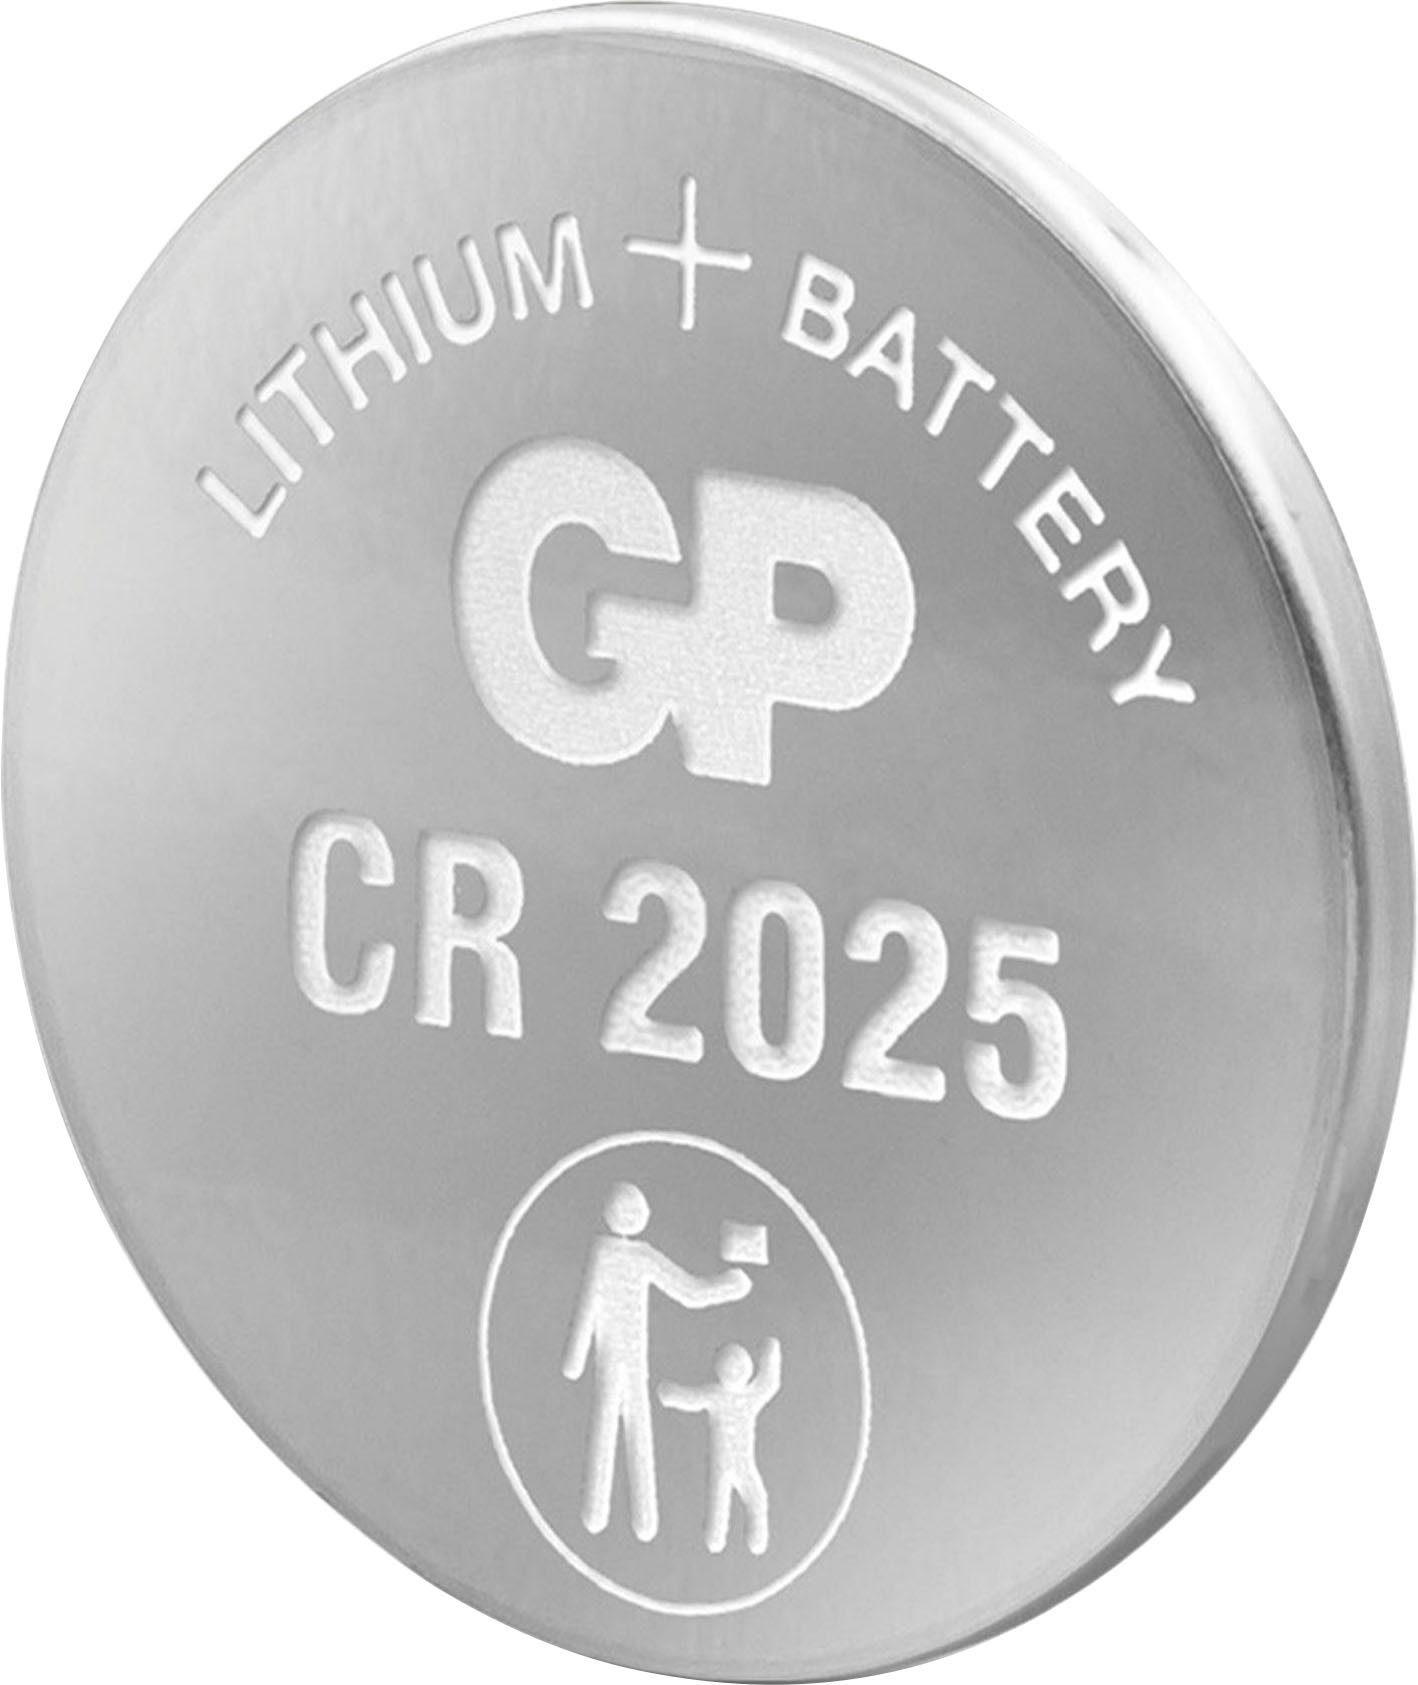 GP Batteries V, Knopfzelle, Lithium CR2025 St) Pack 5er 5 CR2025 (3